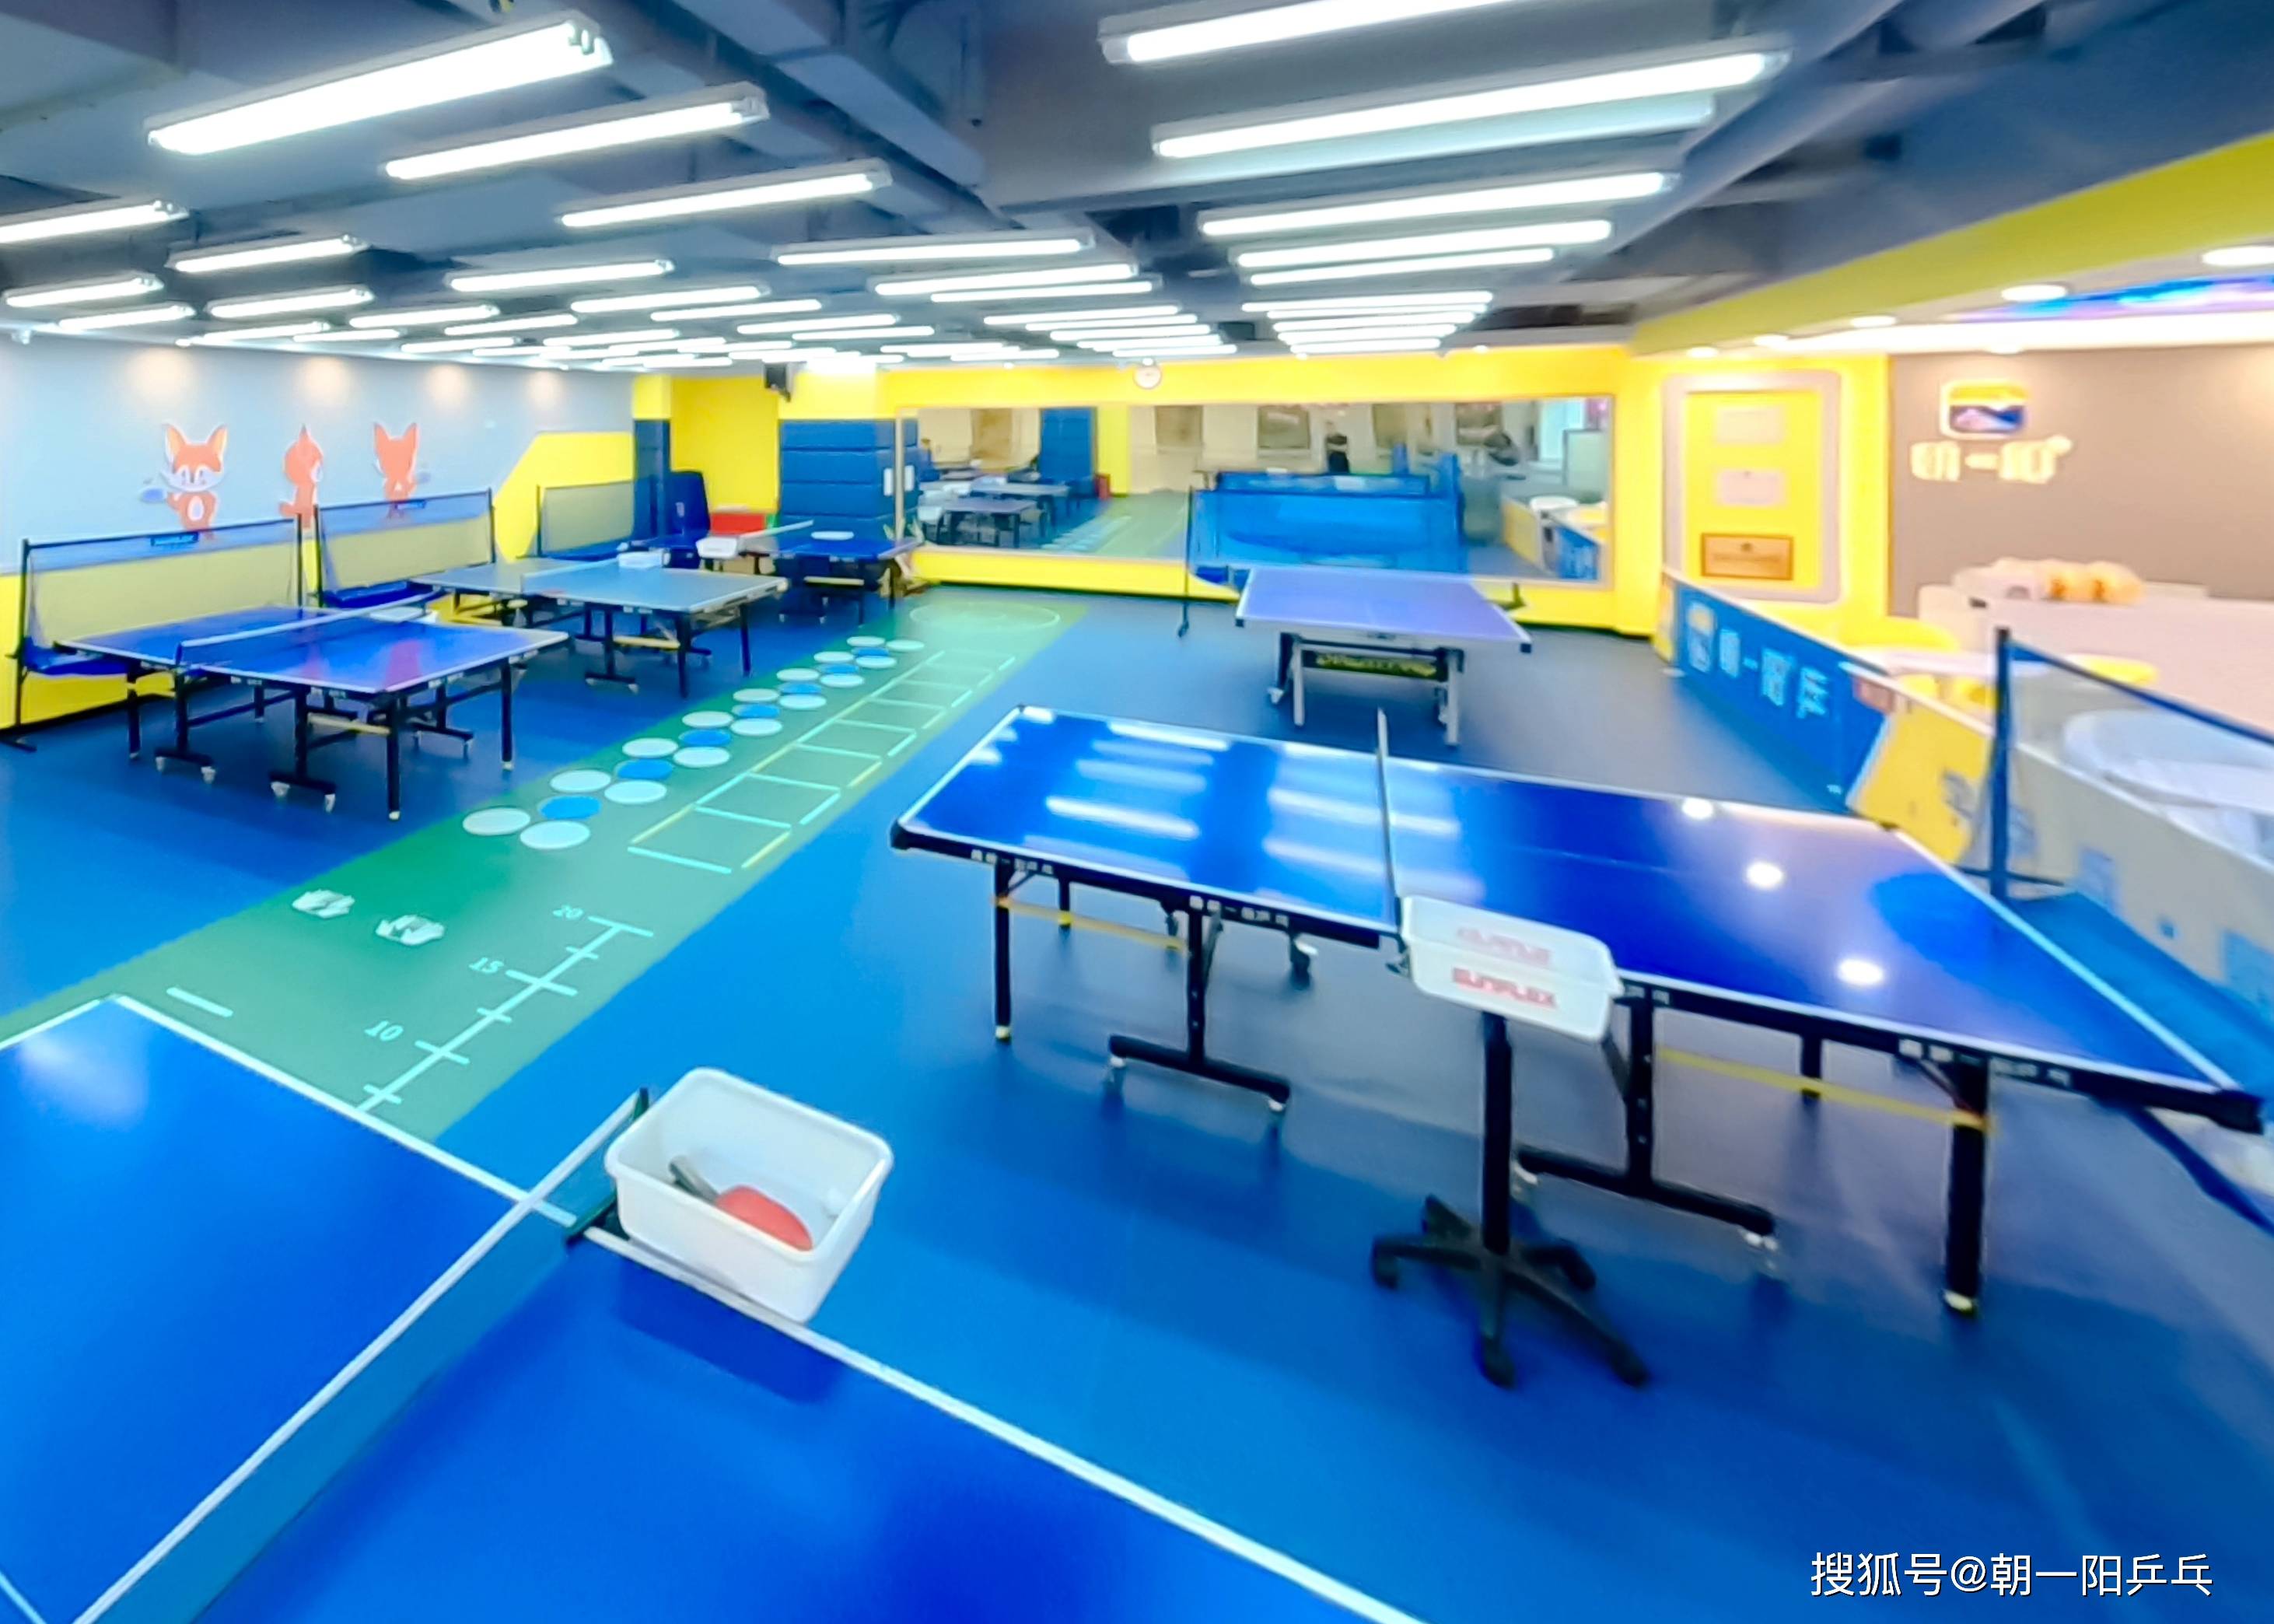 球球体育苹果版
:重庆乒乓球培训基地，浅谈坚持乒乓球体育训练的益处